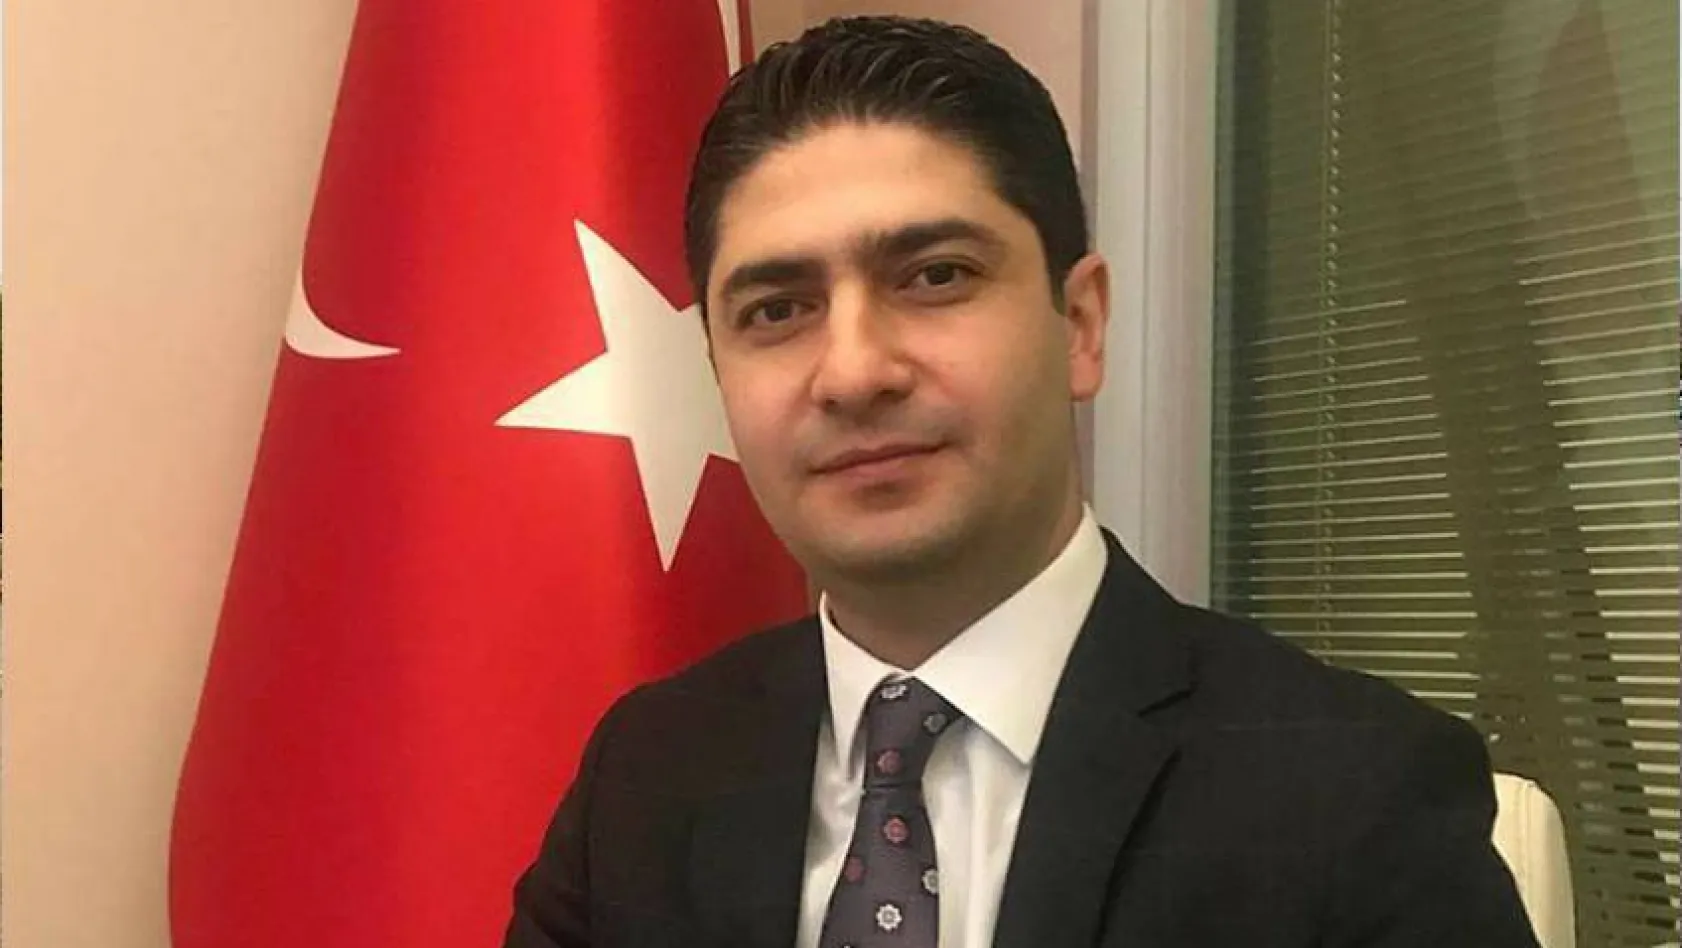 MHP’li Özdemir: Türkiye’nin artık Basra Körfezi, Hazar, Kızıldeniz ve Akdeniz’deki en önemli aktör olduğu kabul edildi